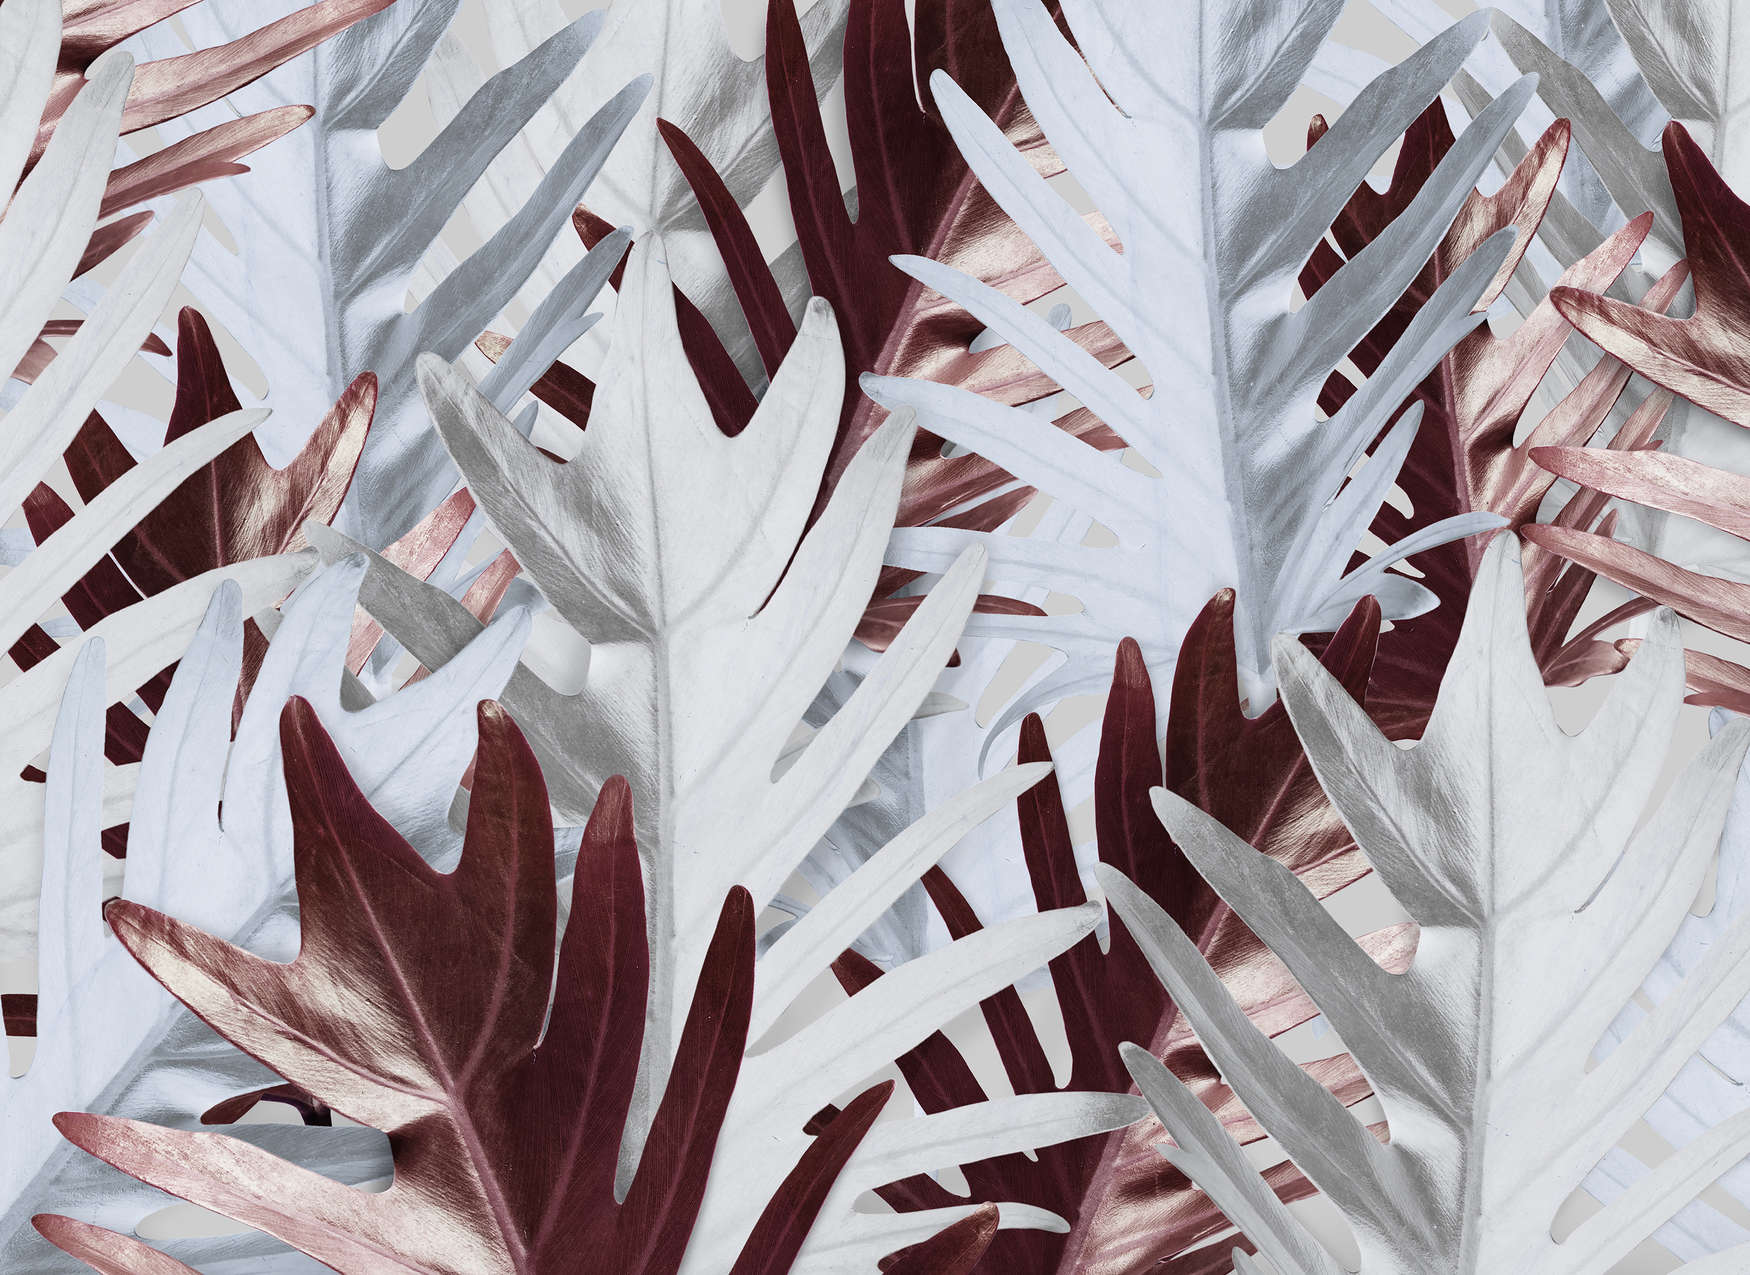             Mural de pared con hojas de selva en tonos suaves - Rojo, Blanco
        